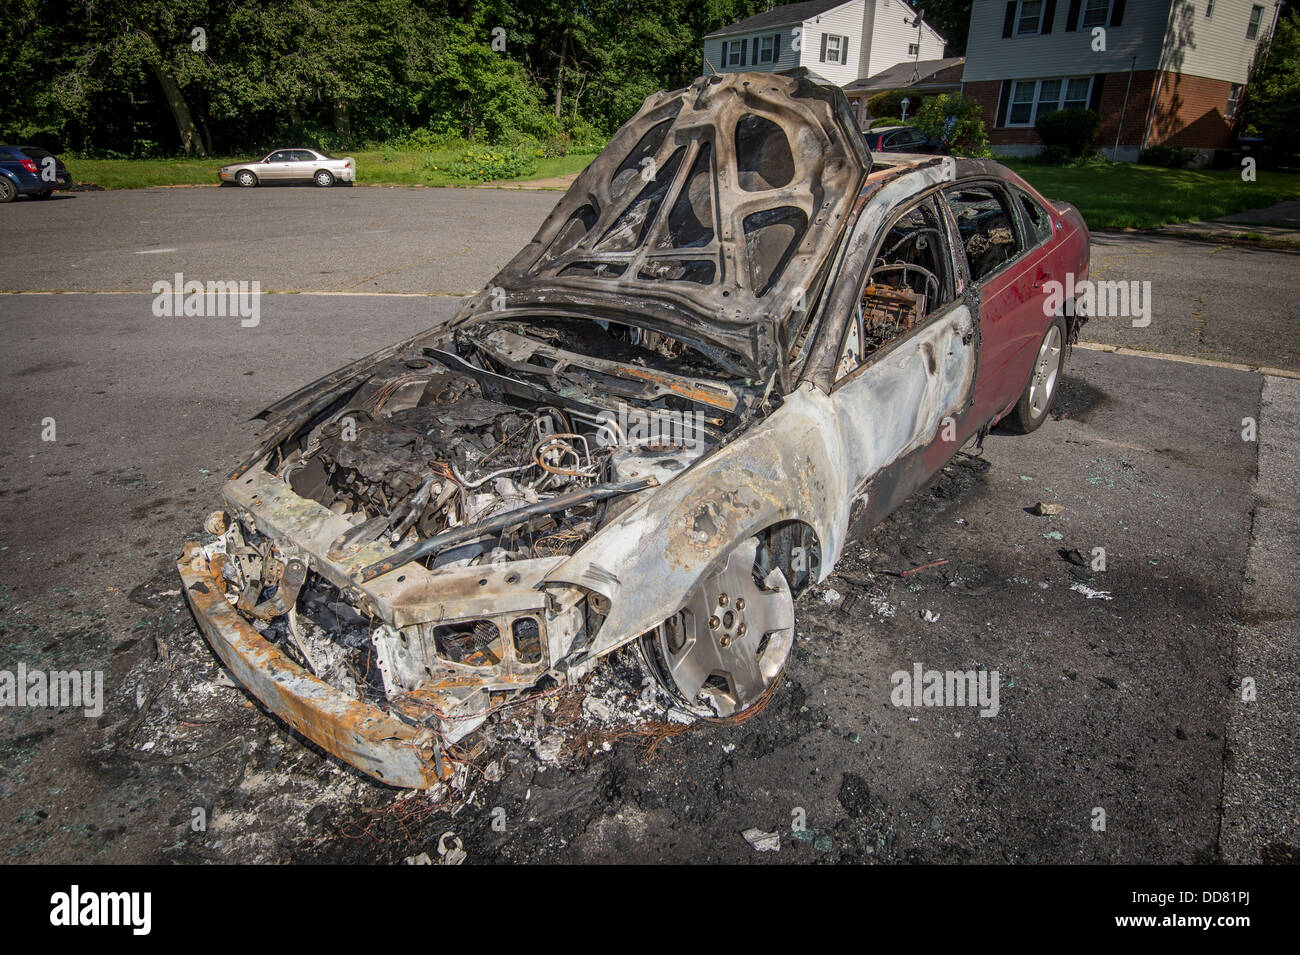 Location de voiture brûlée après l'incendie Banque D'Images